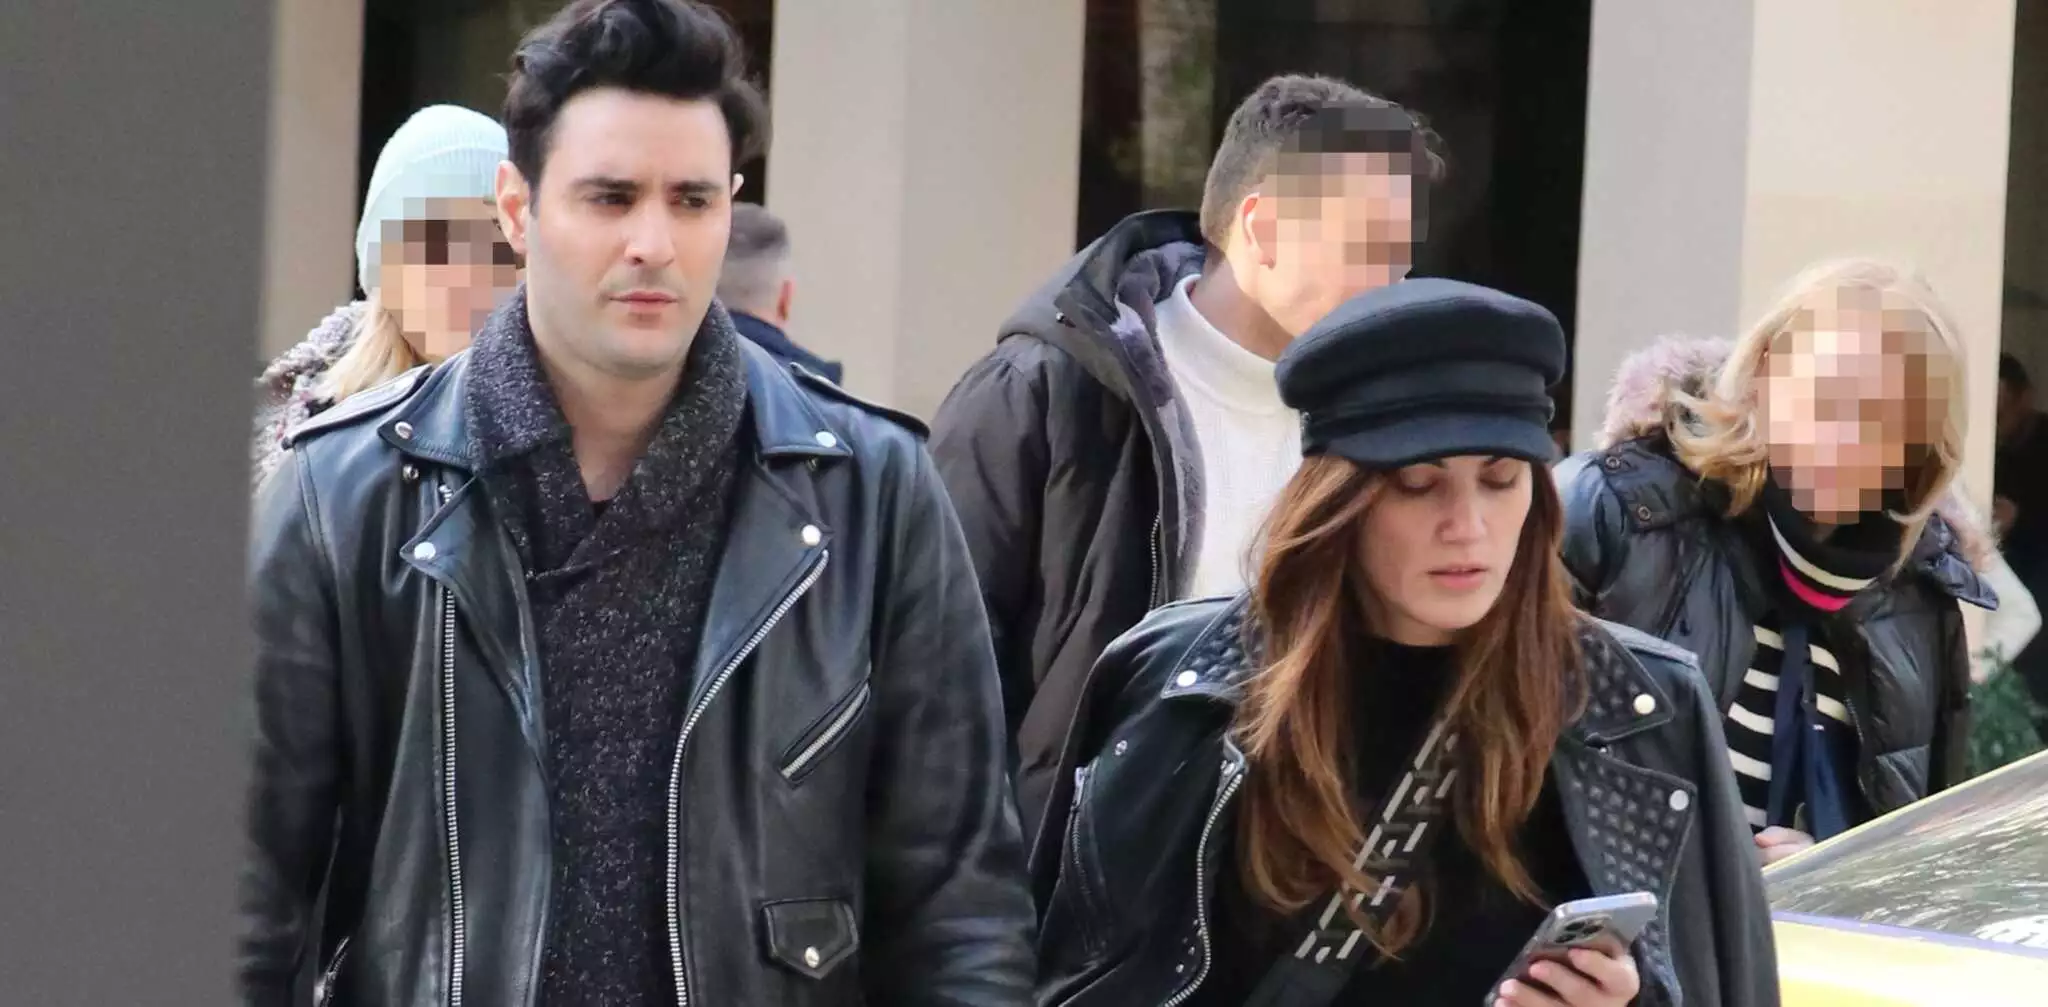 Μαίρη Συνατσάκη και Ίαν Στρατής πιασμένοι χέρι χέρι στο κέντρο της Αθήνας – Με casual look η γνωστή youtuber